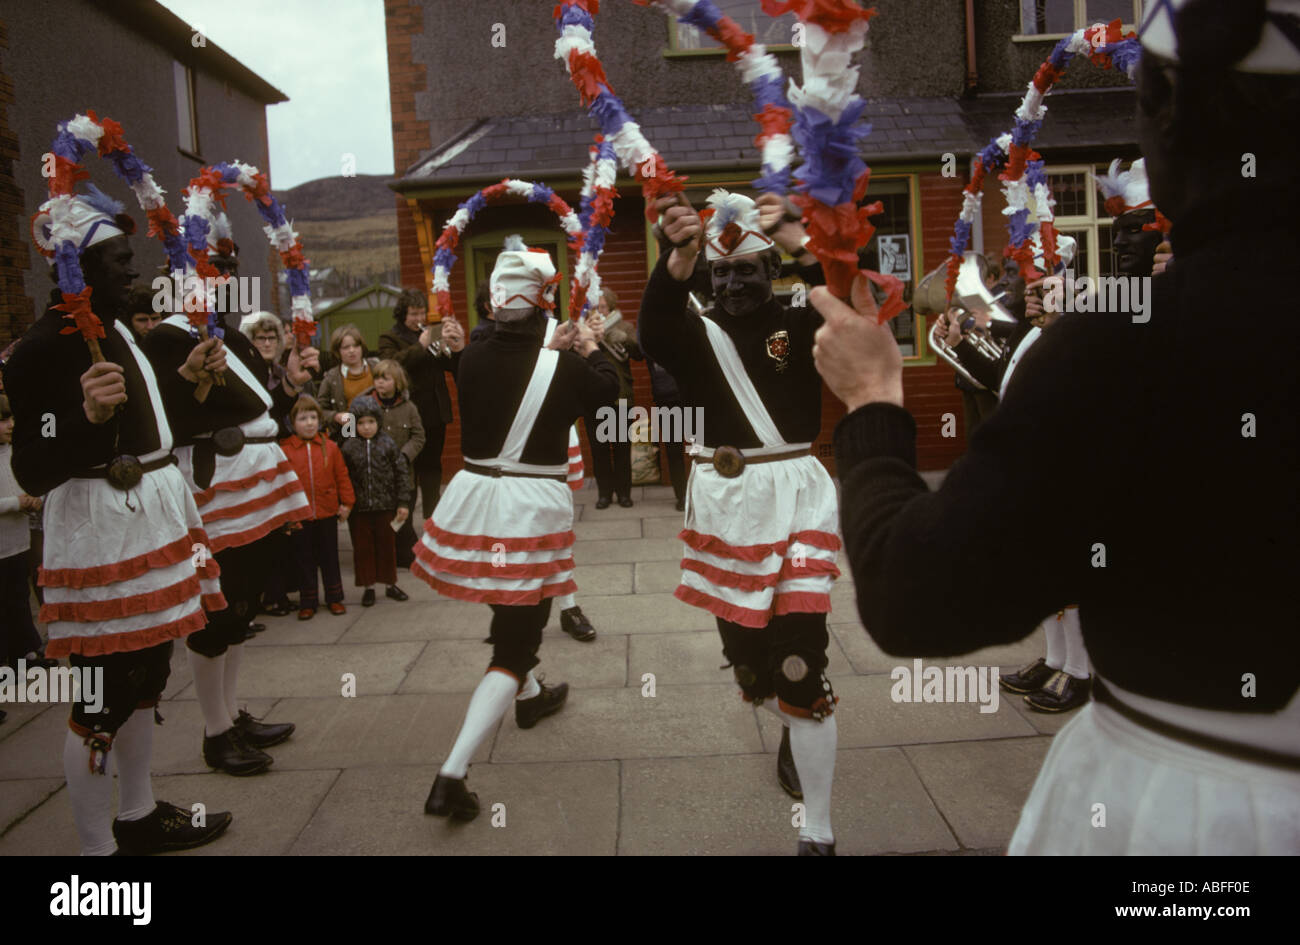 La danse morris traditionnelles Blacked Britannia Bacup Coconut Dancers Bacup Lancashire England UK Vendredi Saint Pâques hommes black jusqu'HOMER SYKES Banque D'Images